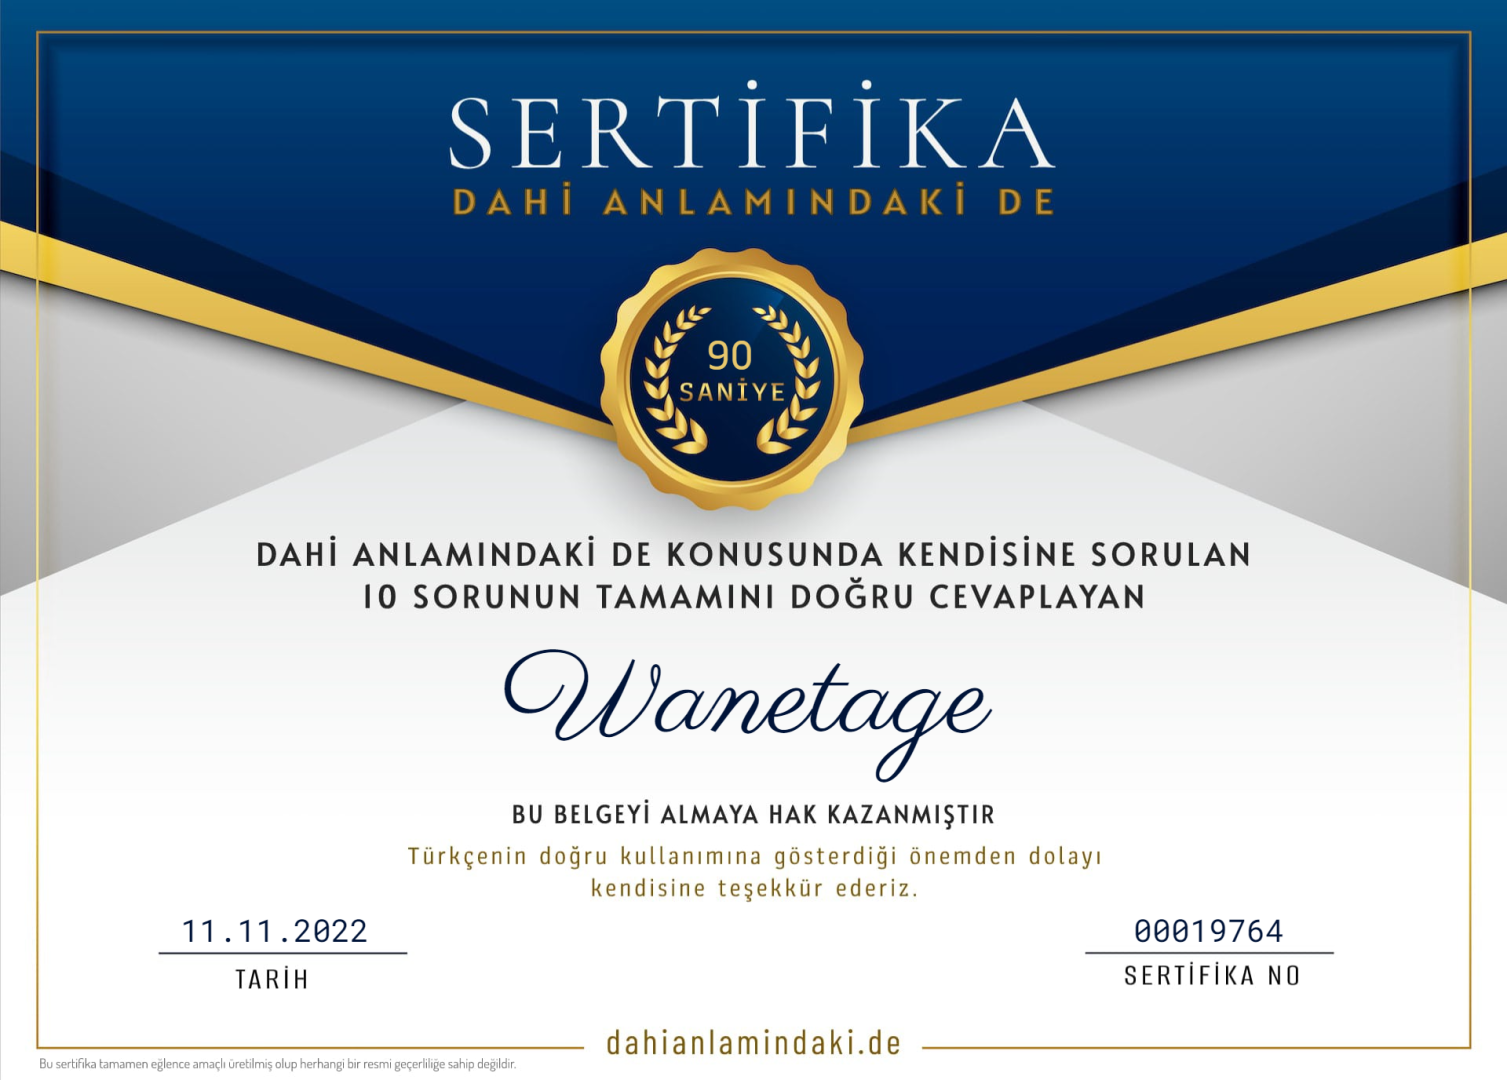 sertifika- -dahianlamindaki.de.png